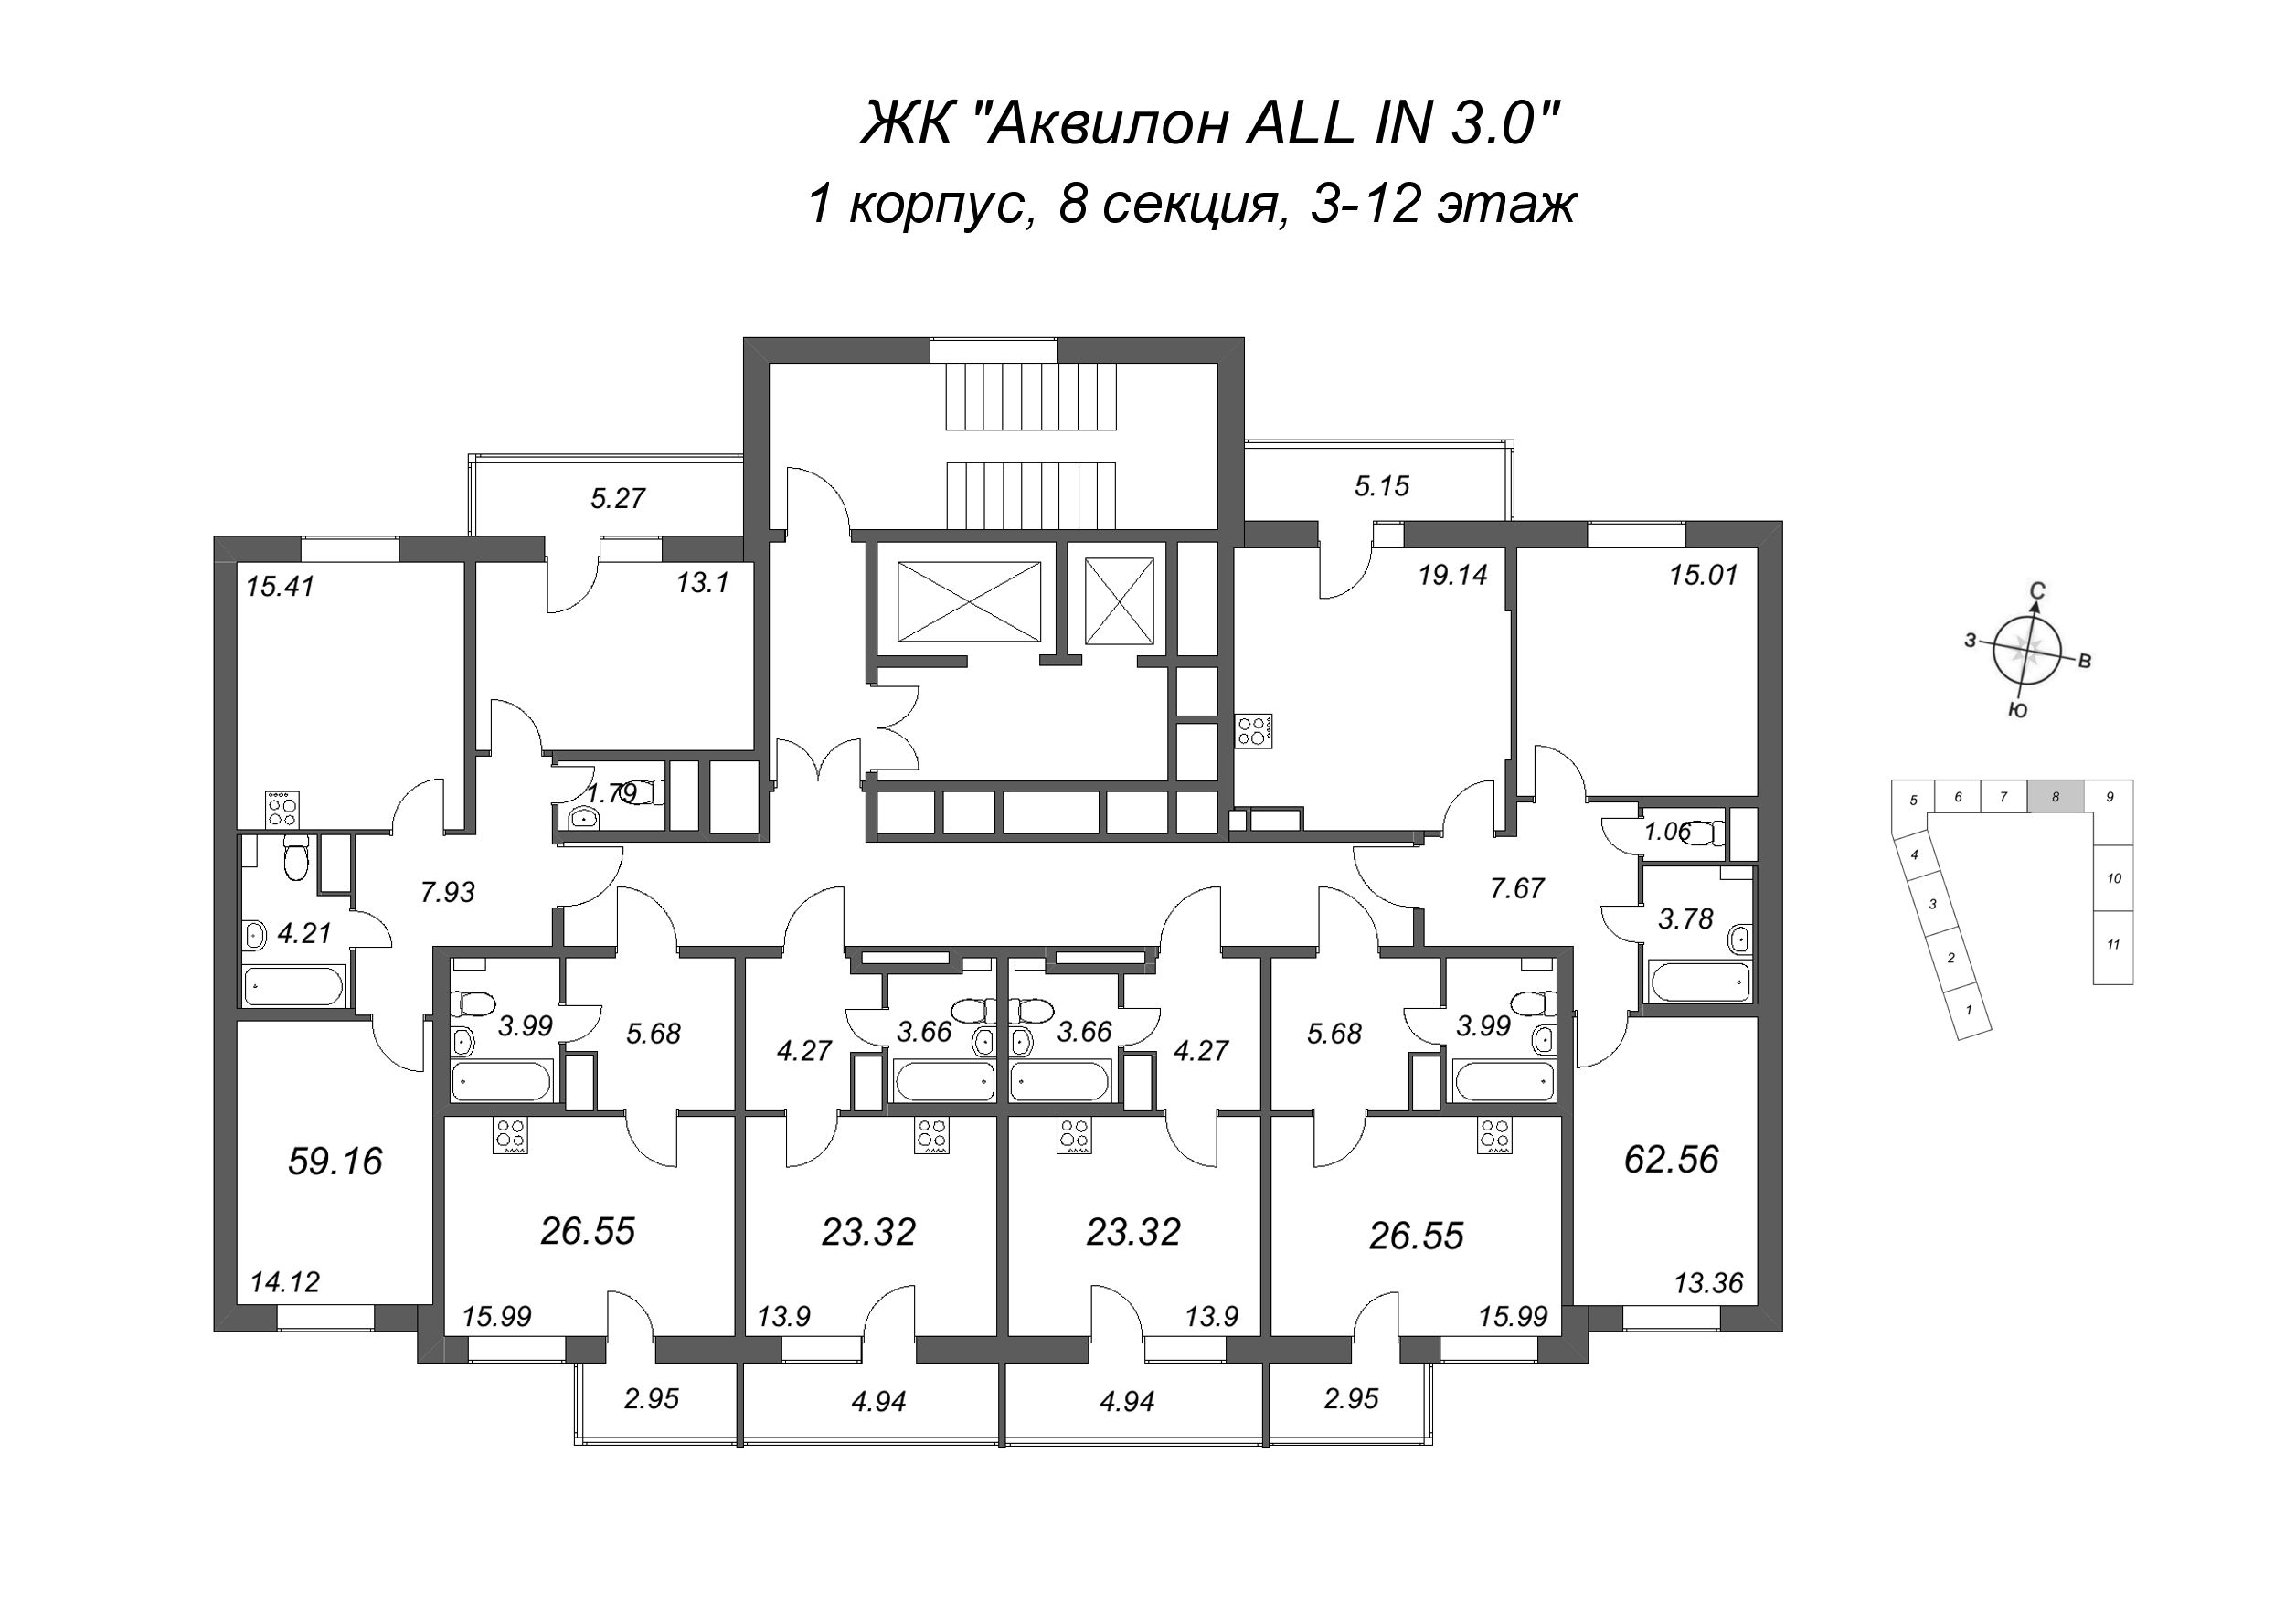 Квартира-студия, 23.32 м² в ЖК "Аквилон All in 3.0" - планировка этажа